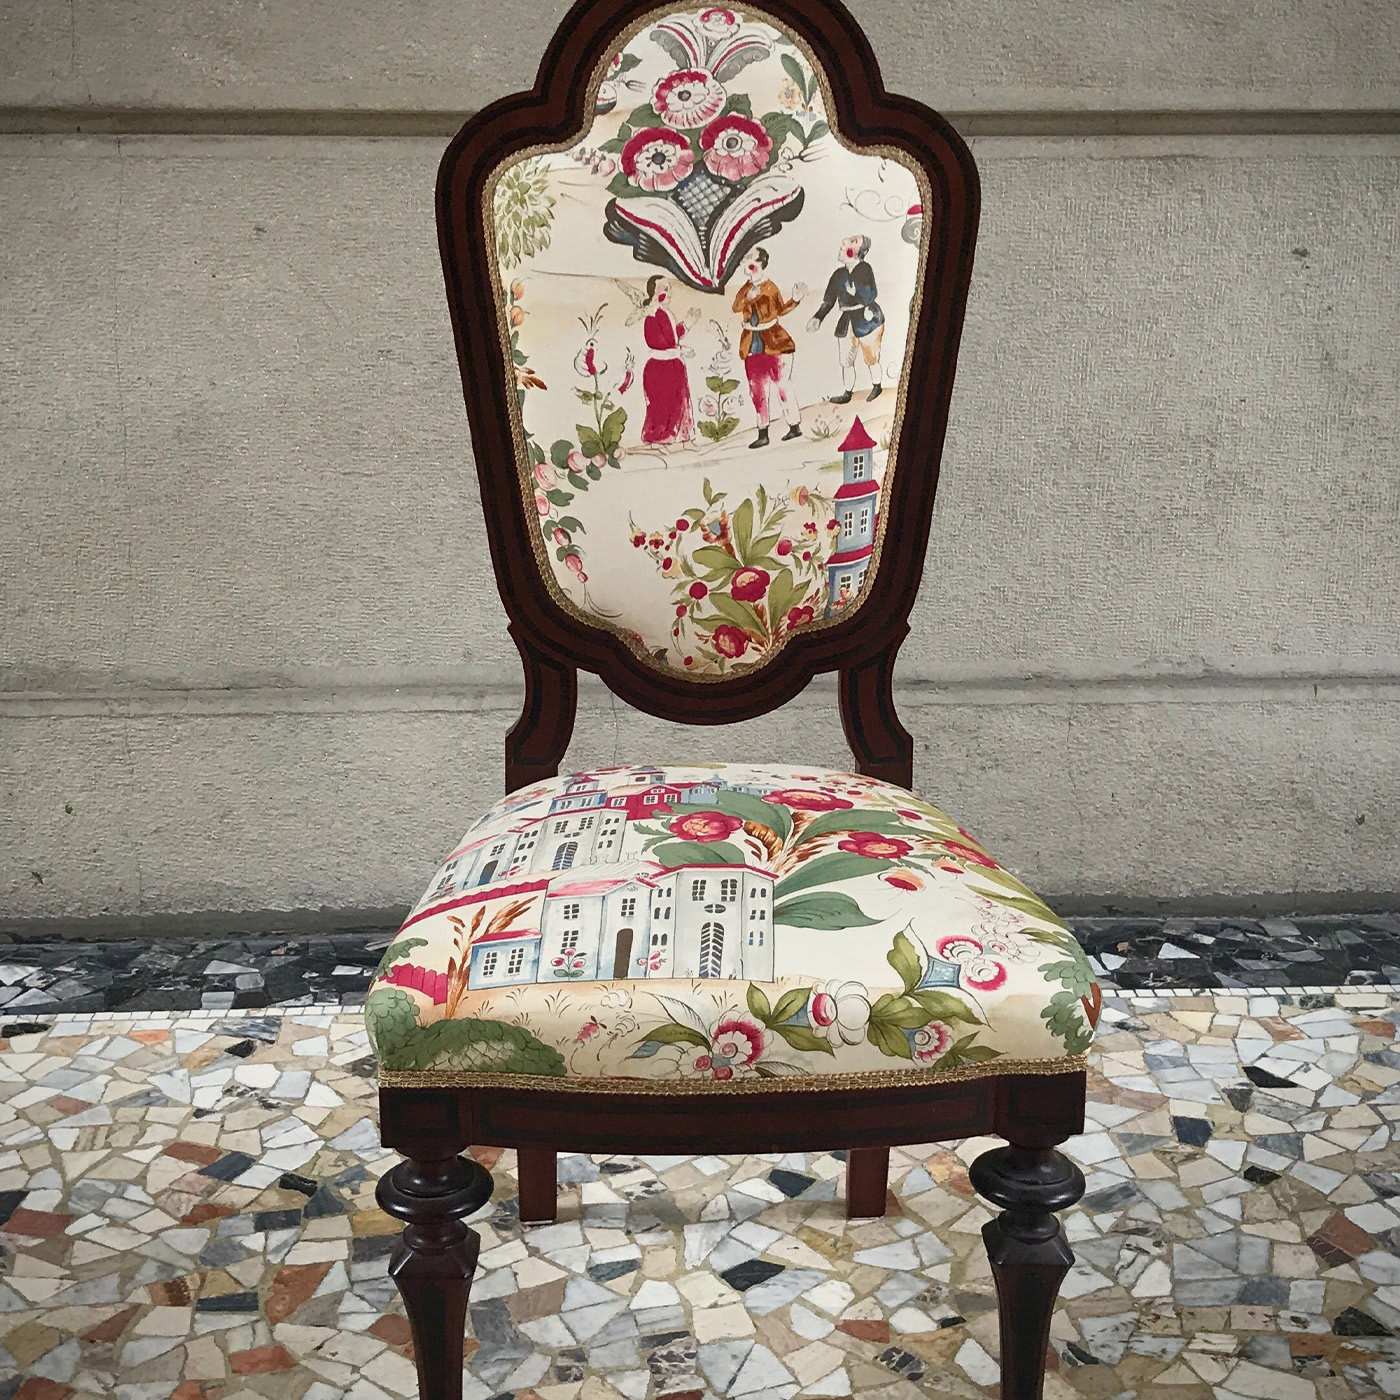 Sedute Esaurite Collection Chair #7 - Renaissance Rehab by Nicoletta Gatti